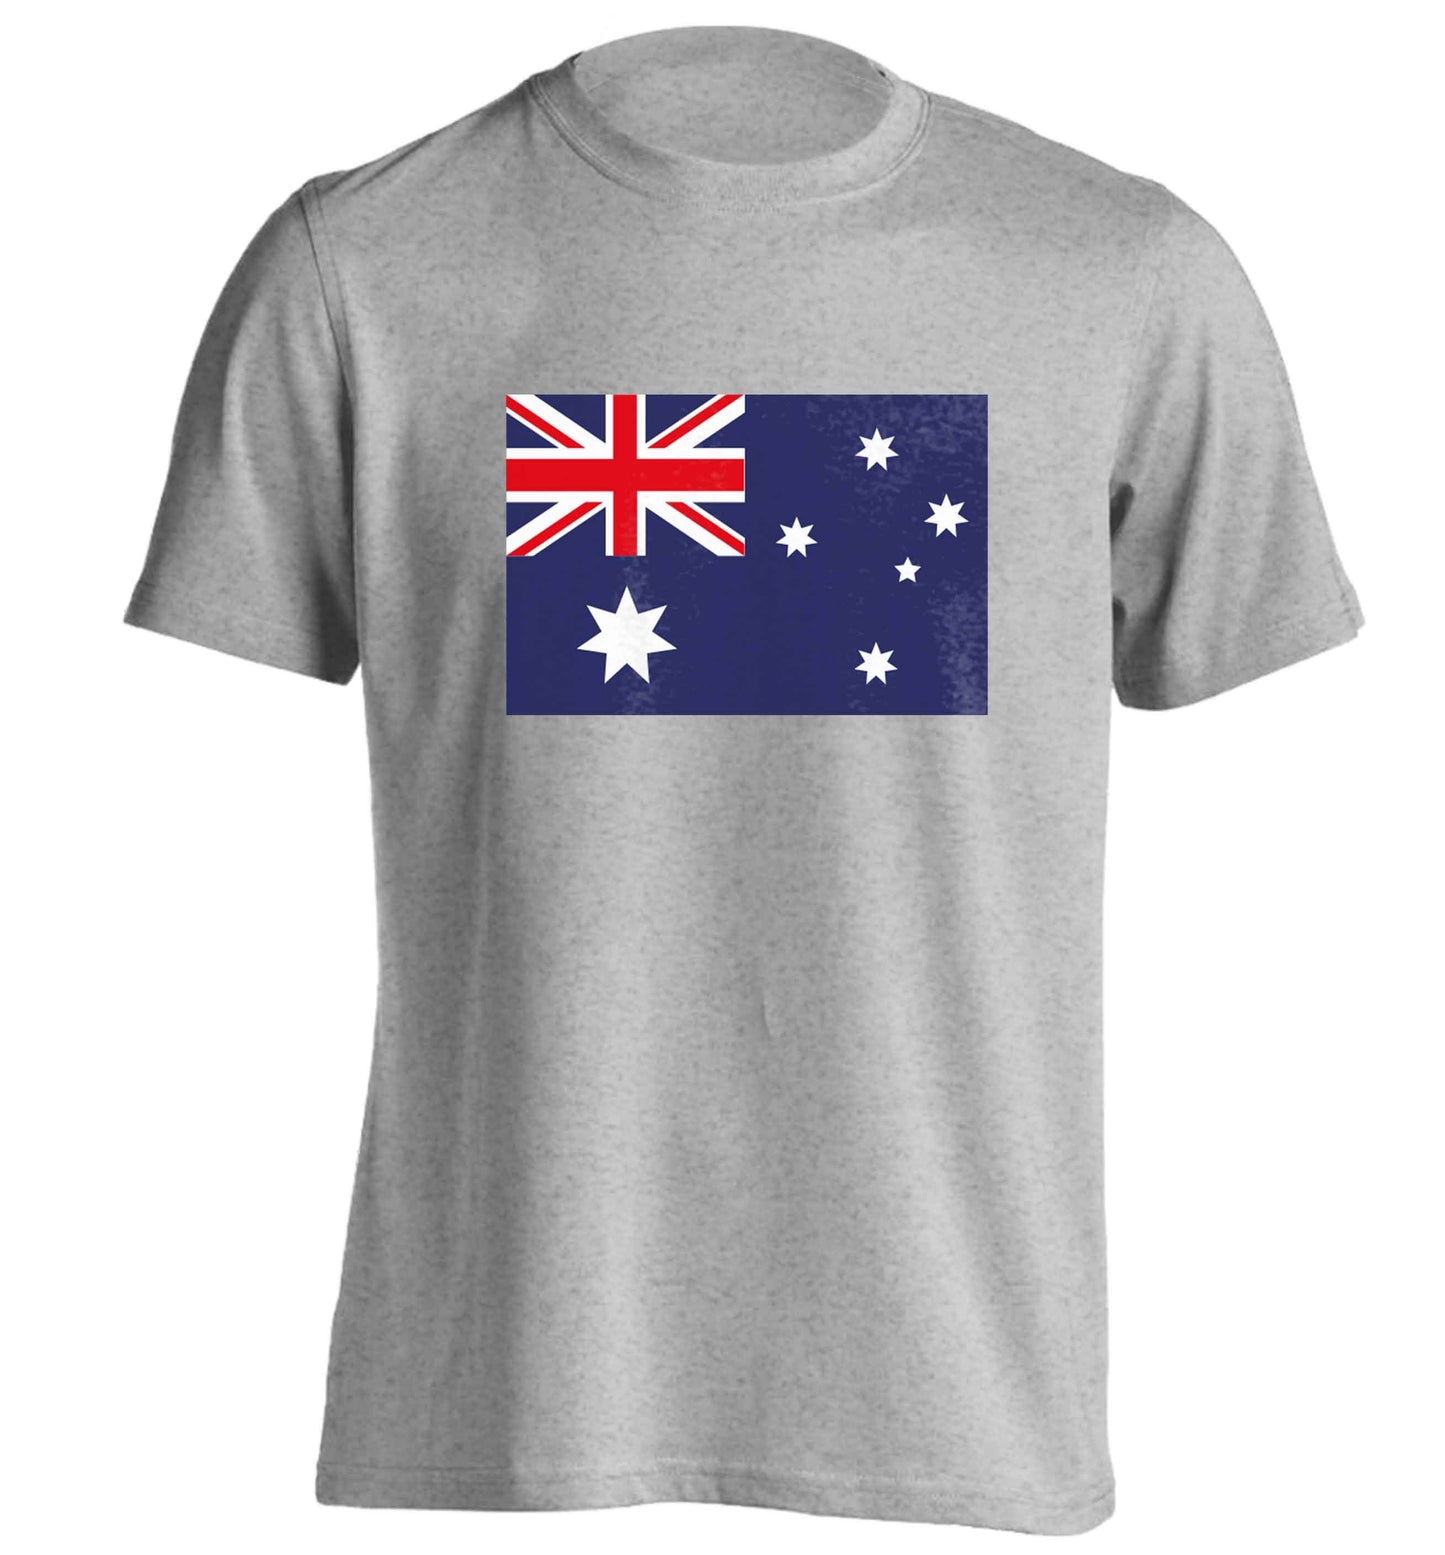 Australian Flag adults unisex grey Tshirt 2XL